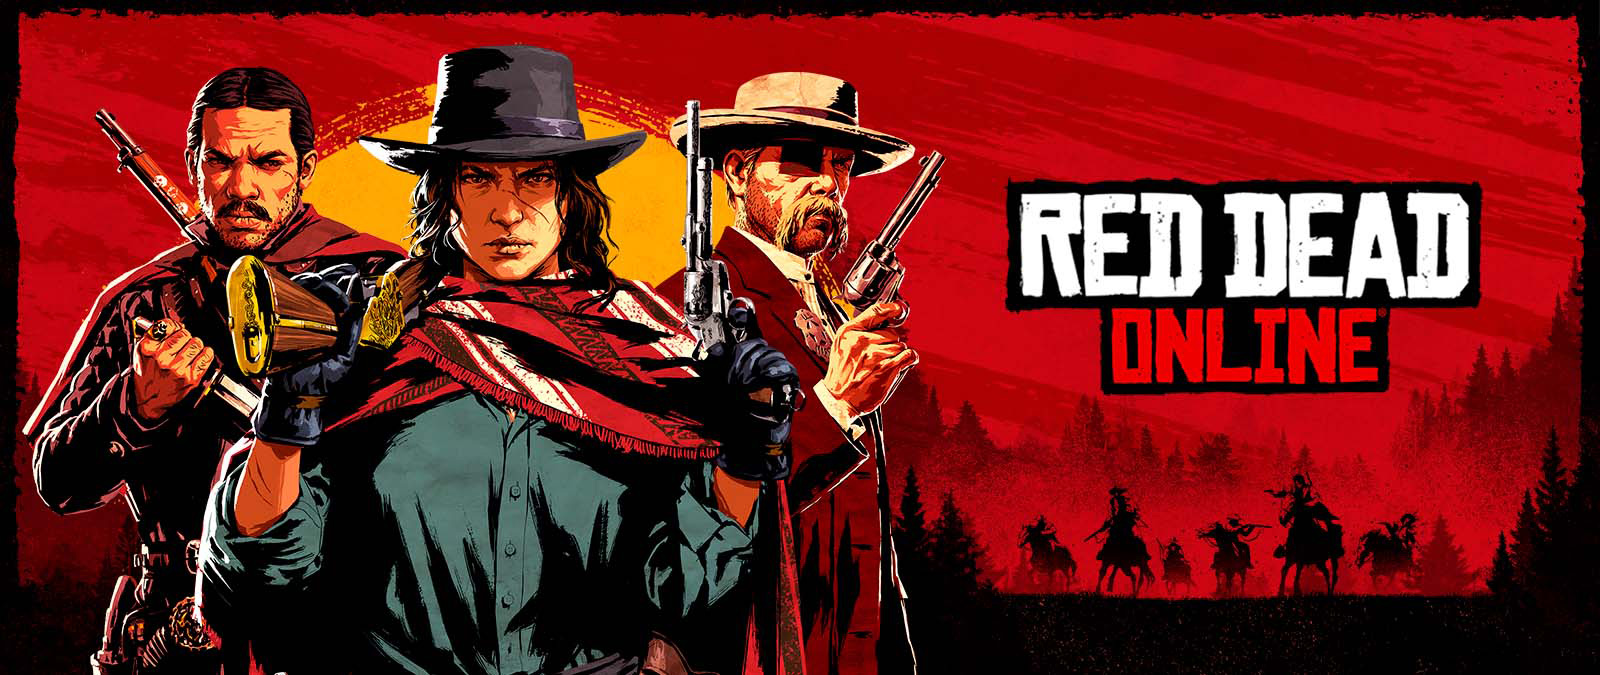 Red Dead 온라인. 석양 앞에서 무기를 들고 있는 세 캐릭터와, 말에 탄 다른 캐릭터 여러 명의 그림자.